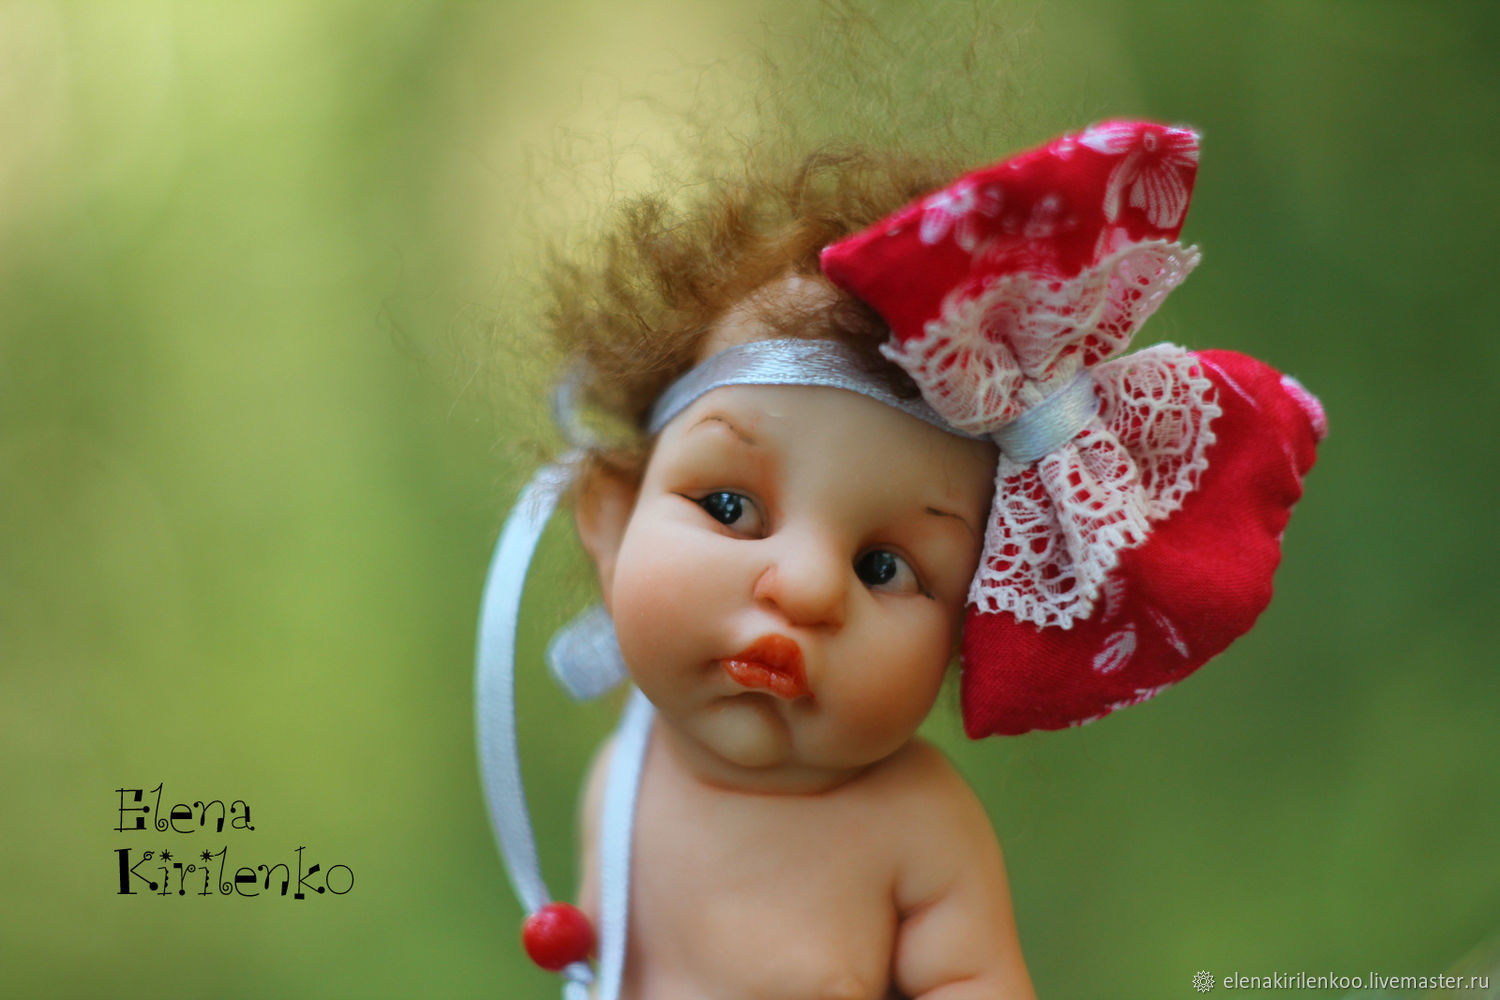 Куклы, глядя на которые невозможно не улыбнуться. Автор создатель Елена Кириленко. Россия, Псков. 